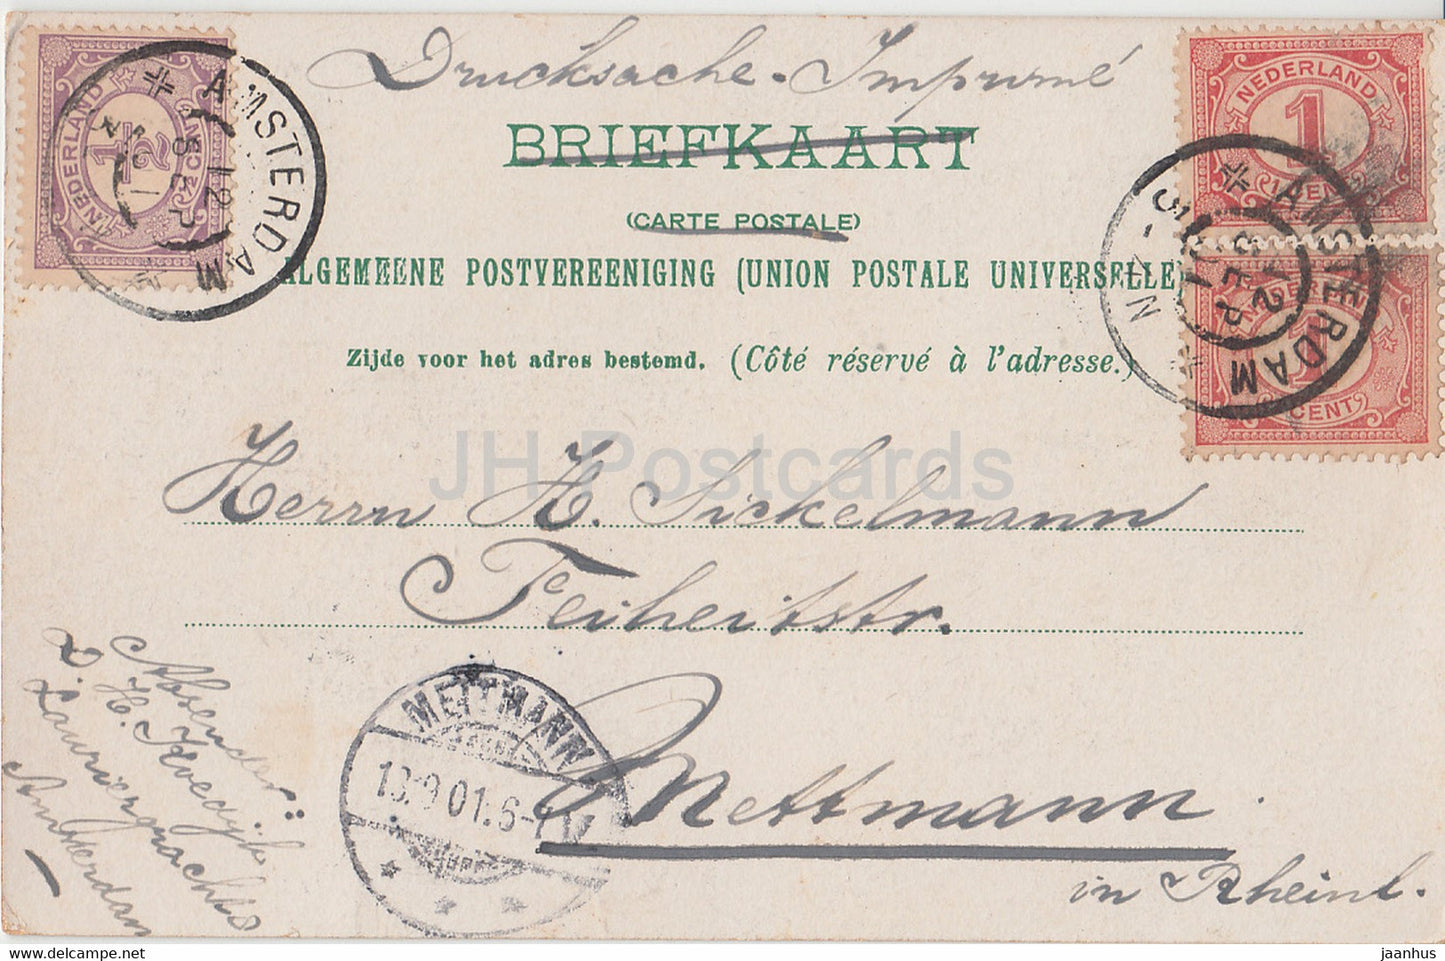 Amsterdam - Het Centraal Station - Bahnhof - alte Postkarte - 1901 - Niederlande - gebraucht